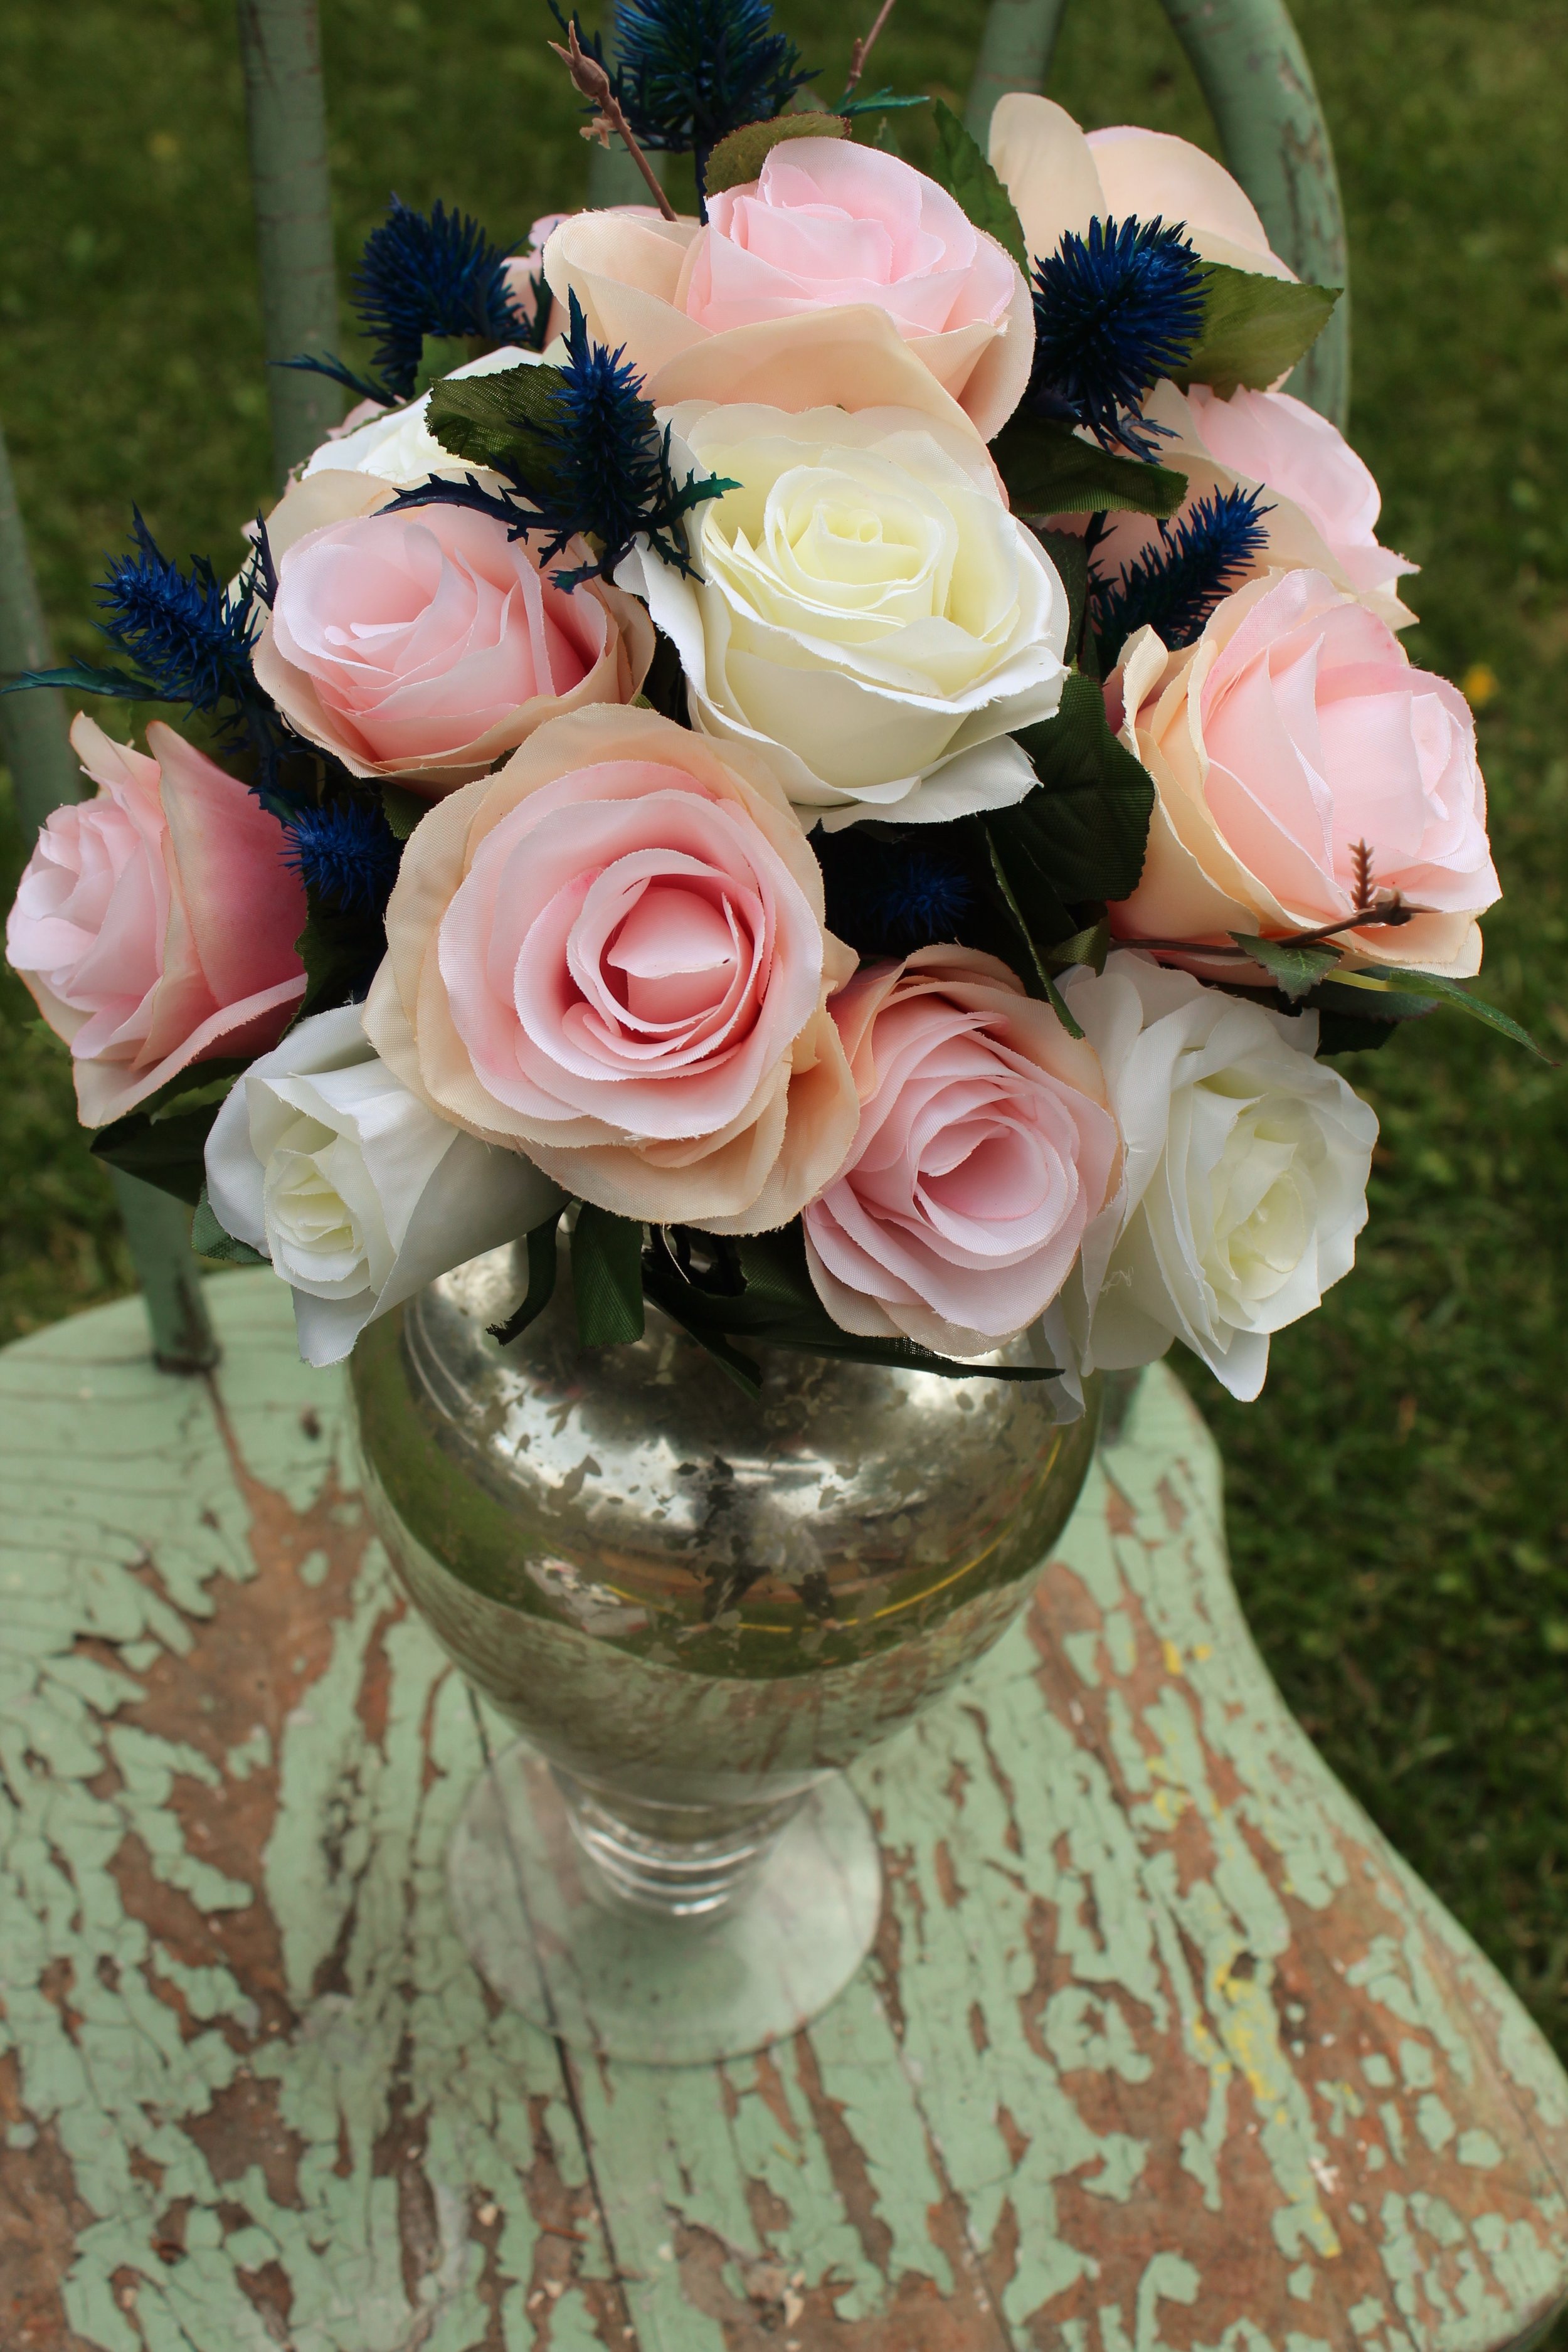 Centerpieces Order Silk Wedding Flowers Online Love Is Blooming Blog Silk Wedding Flowers And Bouquets Online Love Is Blooming